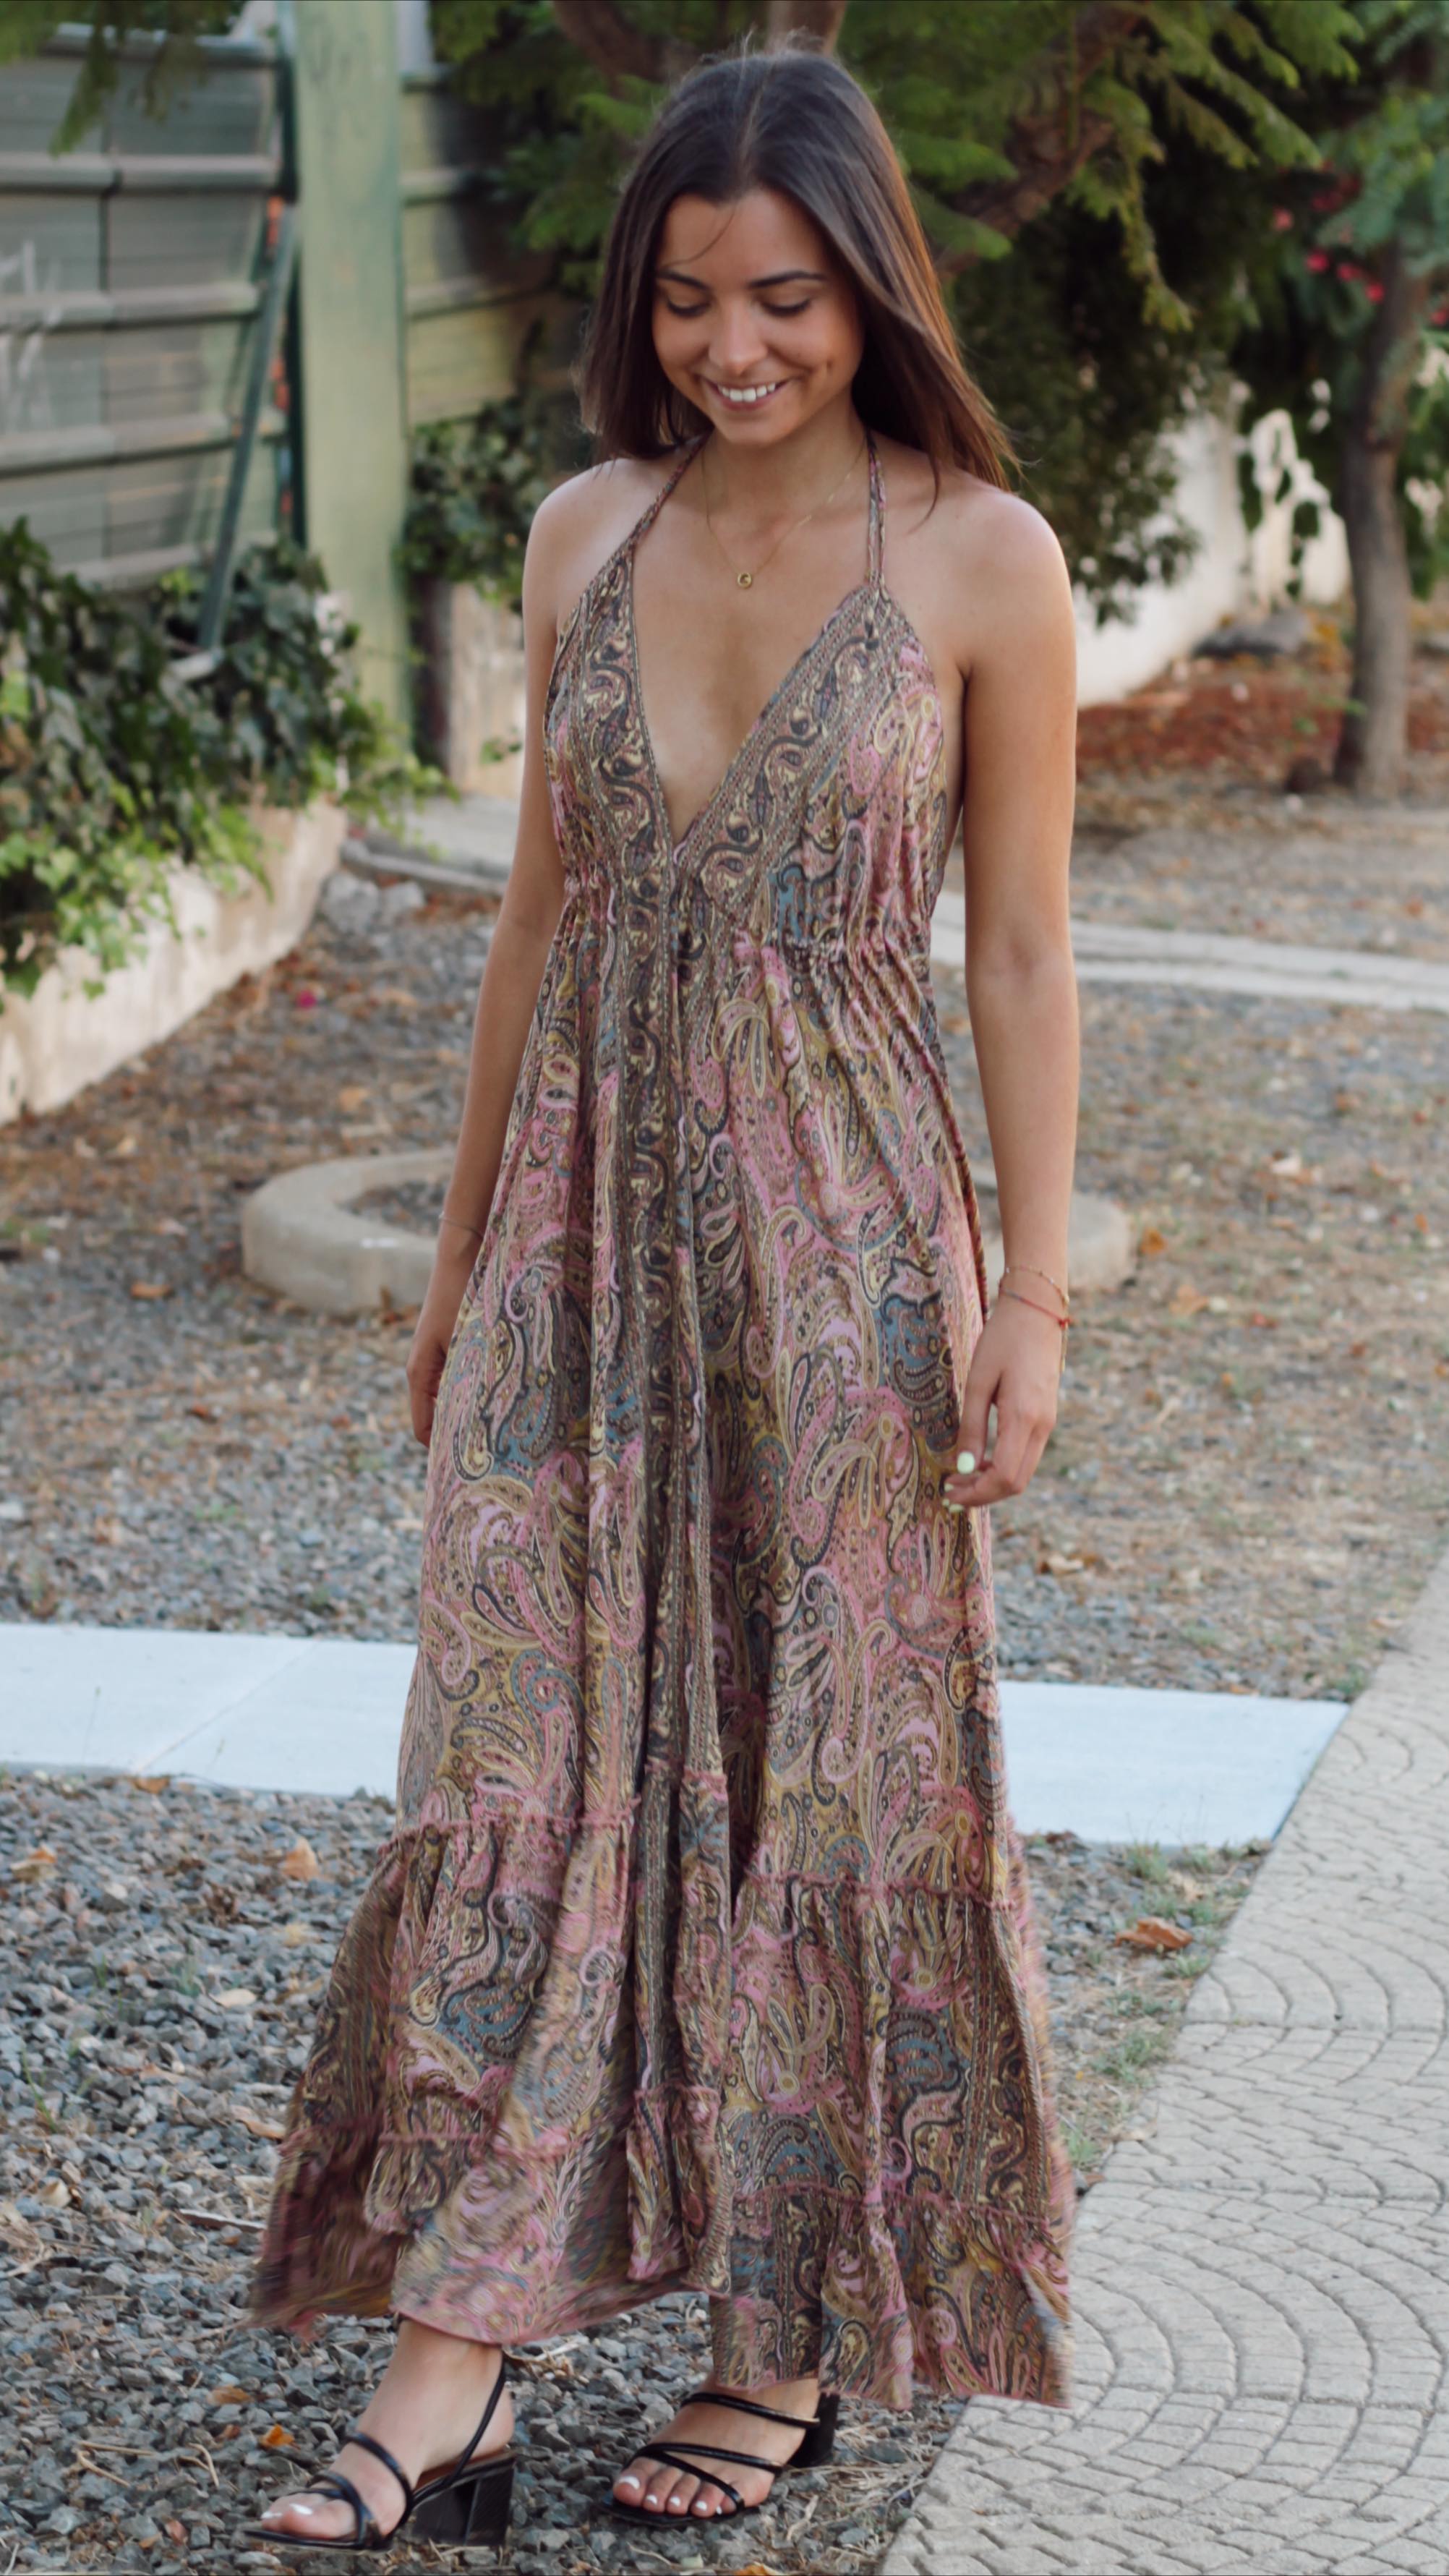 O vestido perfeito 💗

Já está disponível no site: www.singularstore.pt